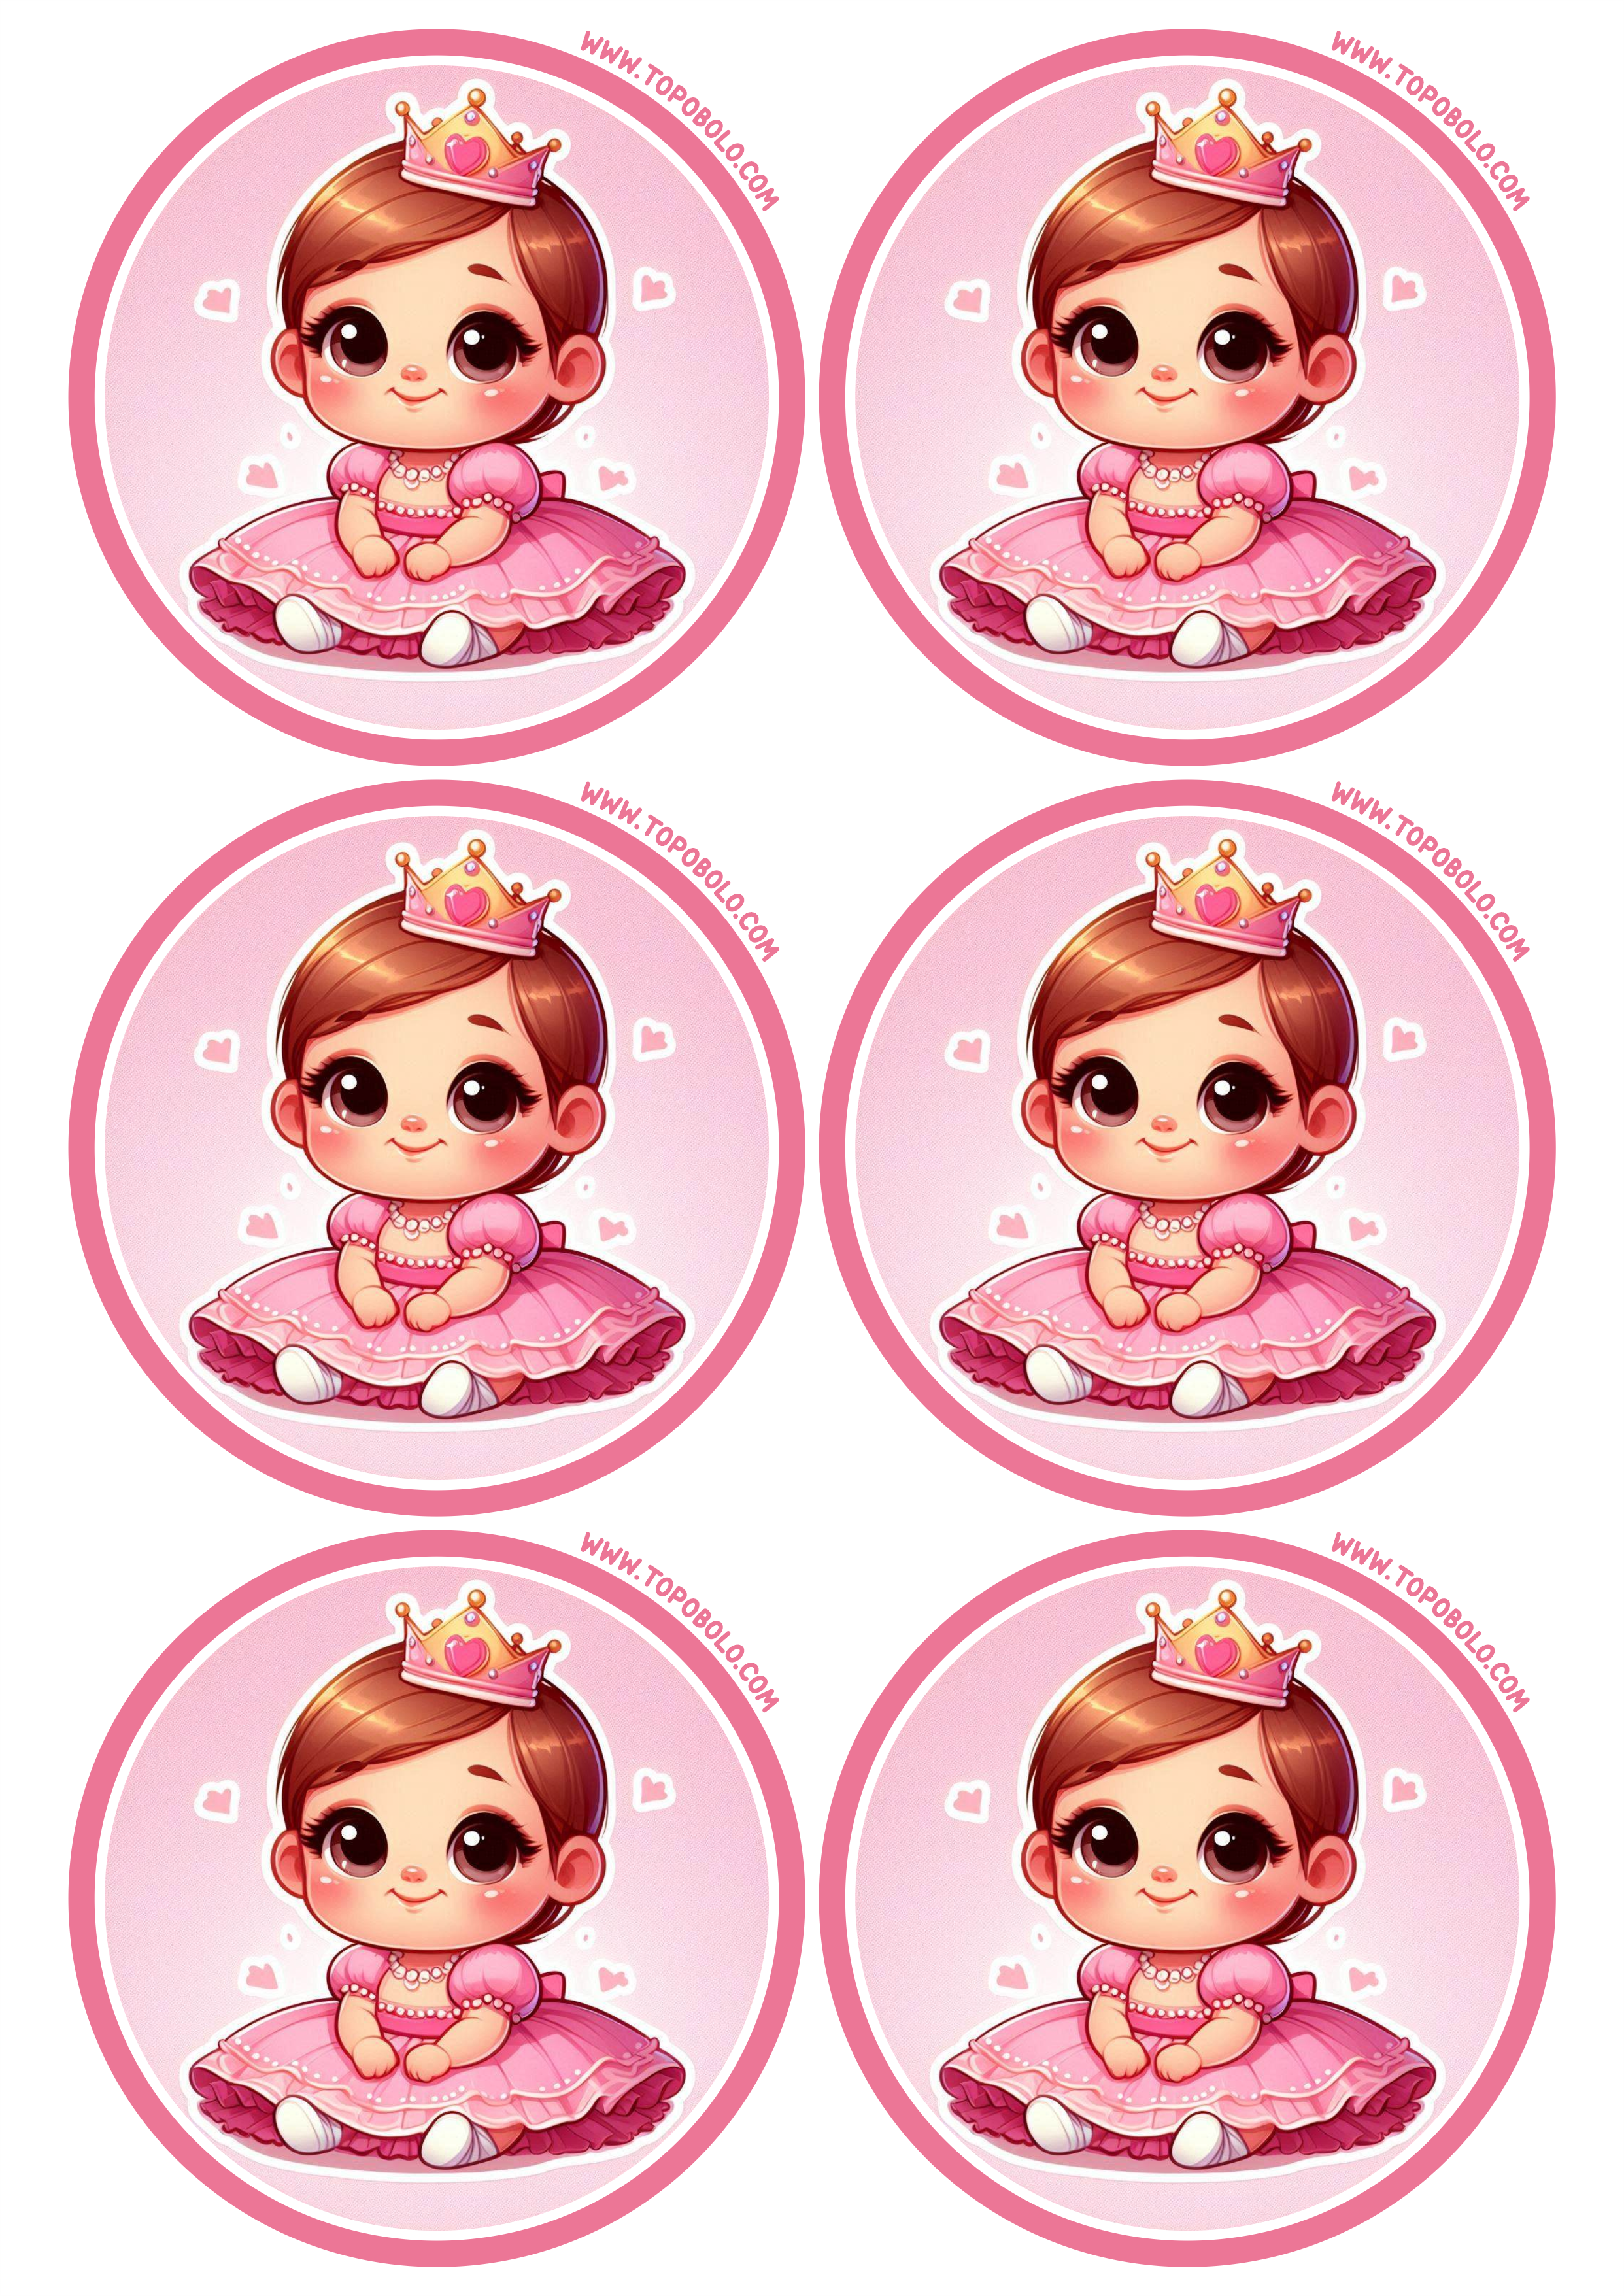 Menina com vestido rosa e coroa de princesa adesivo redondo para decoração de aniversário pronto para imprimir 6 imagens png